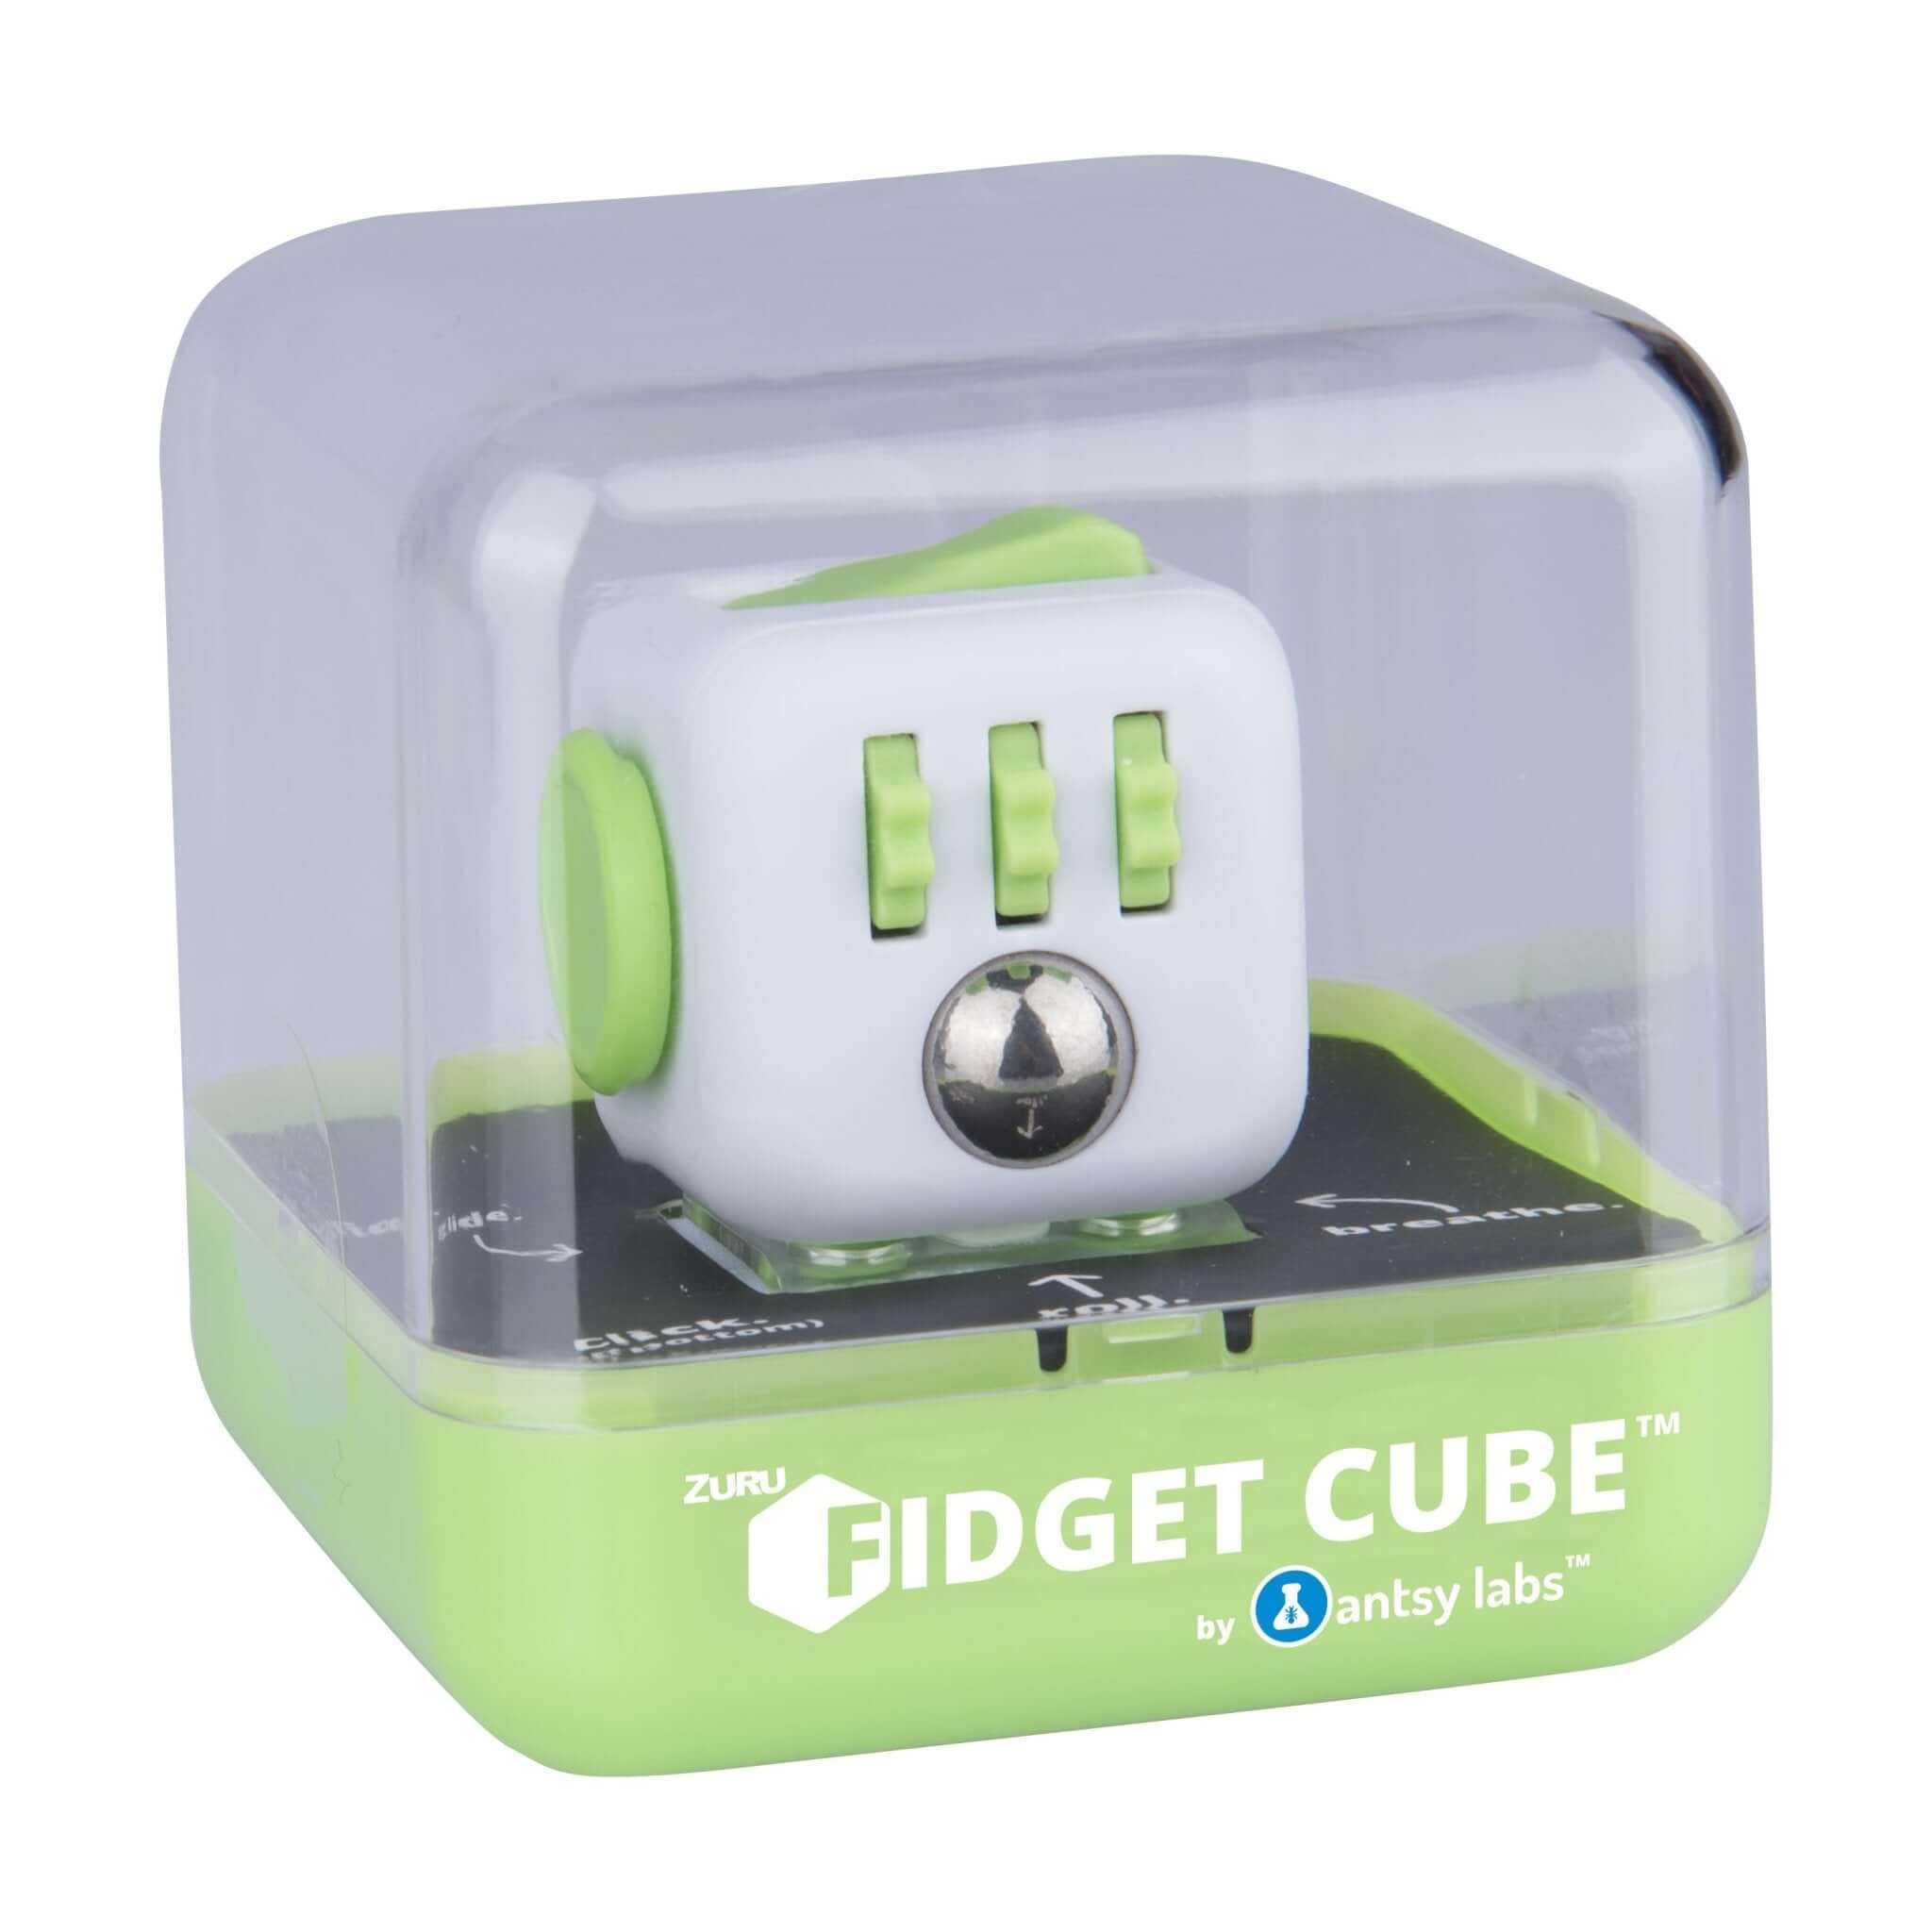 Fidget Cube Now | The Original Fidget